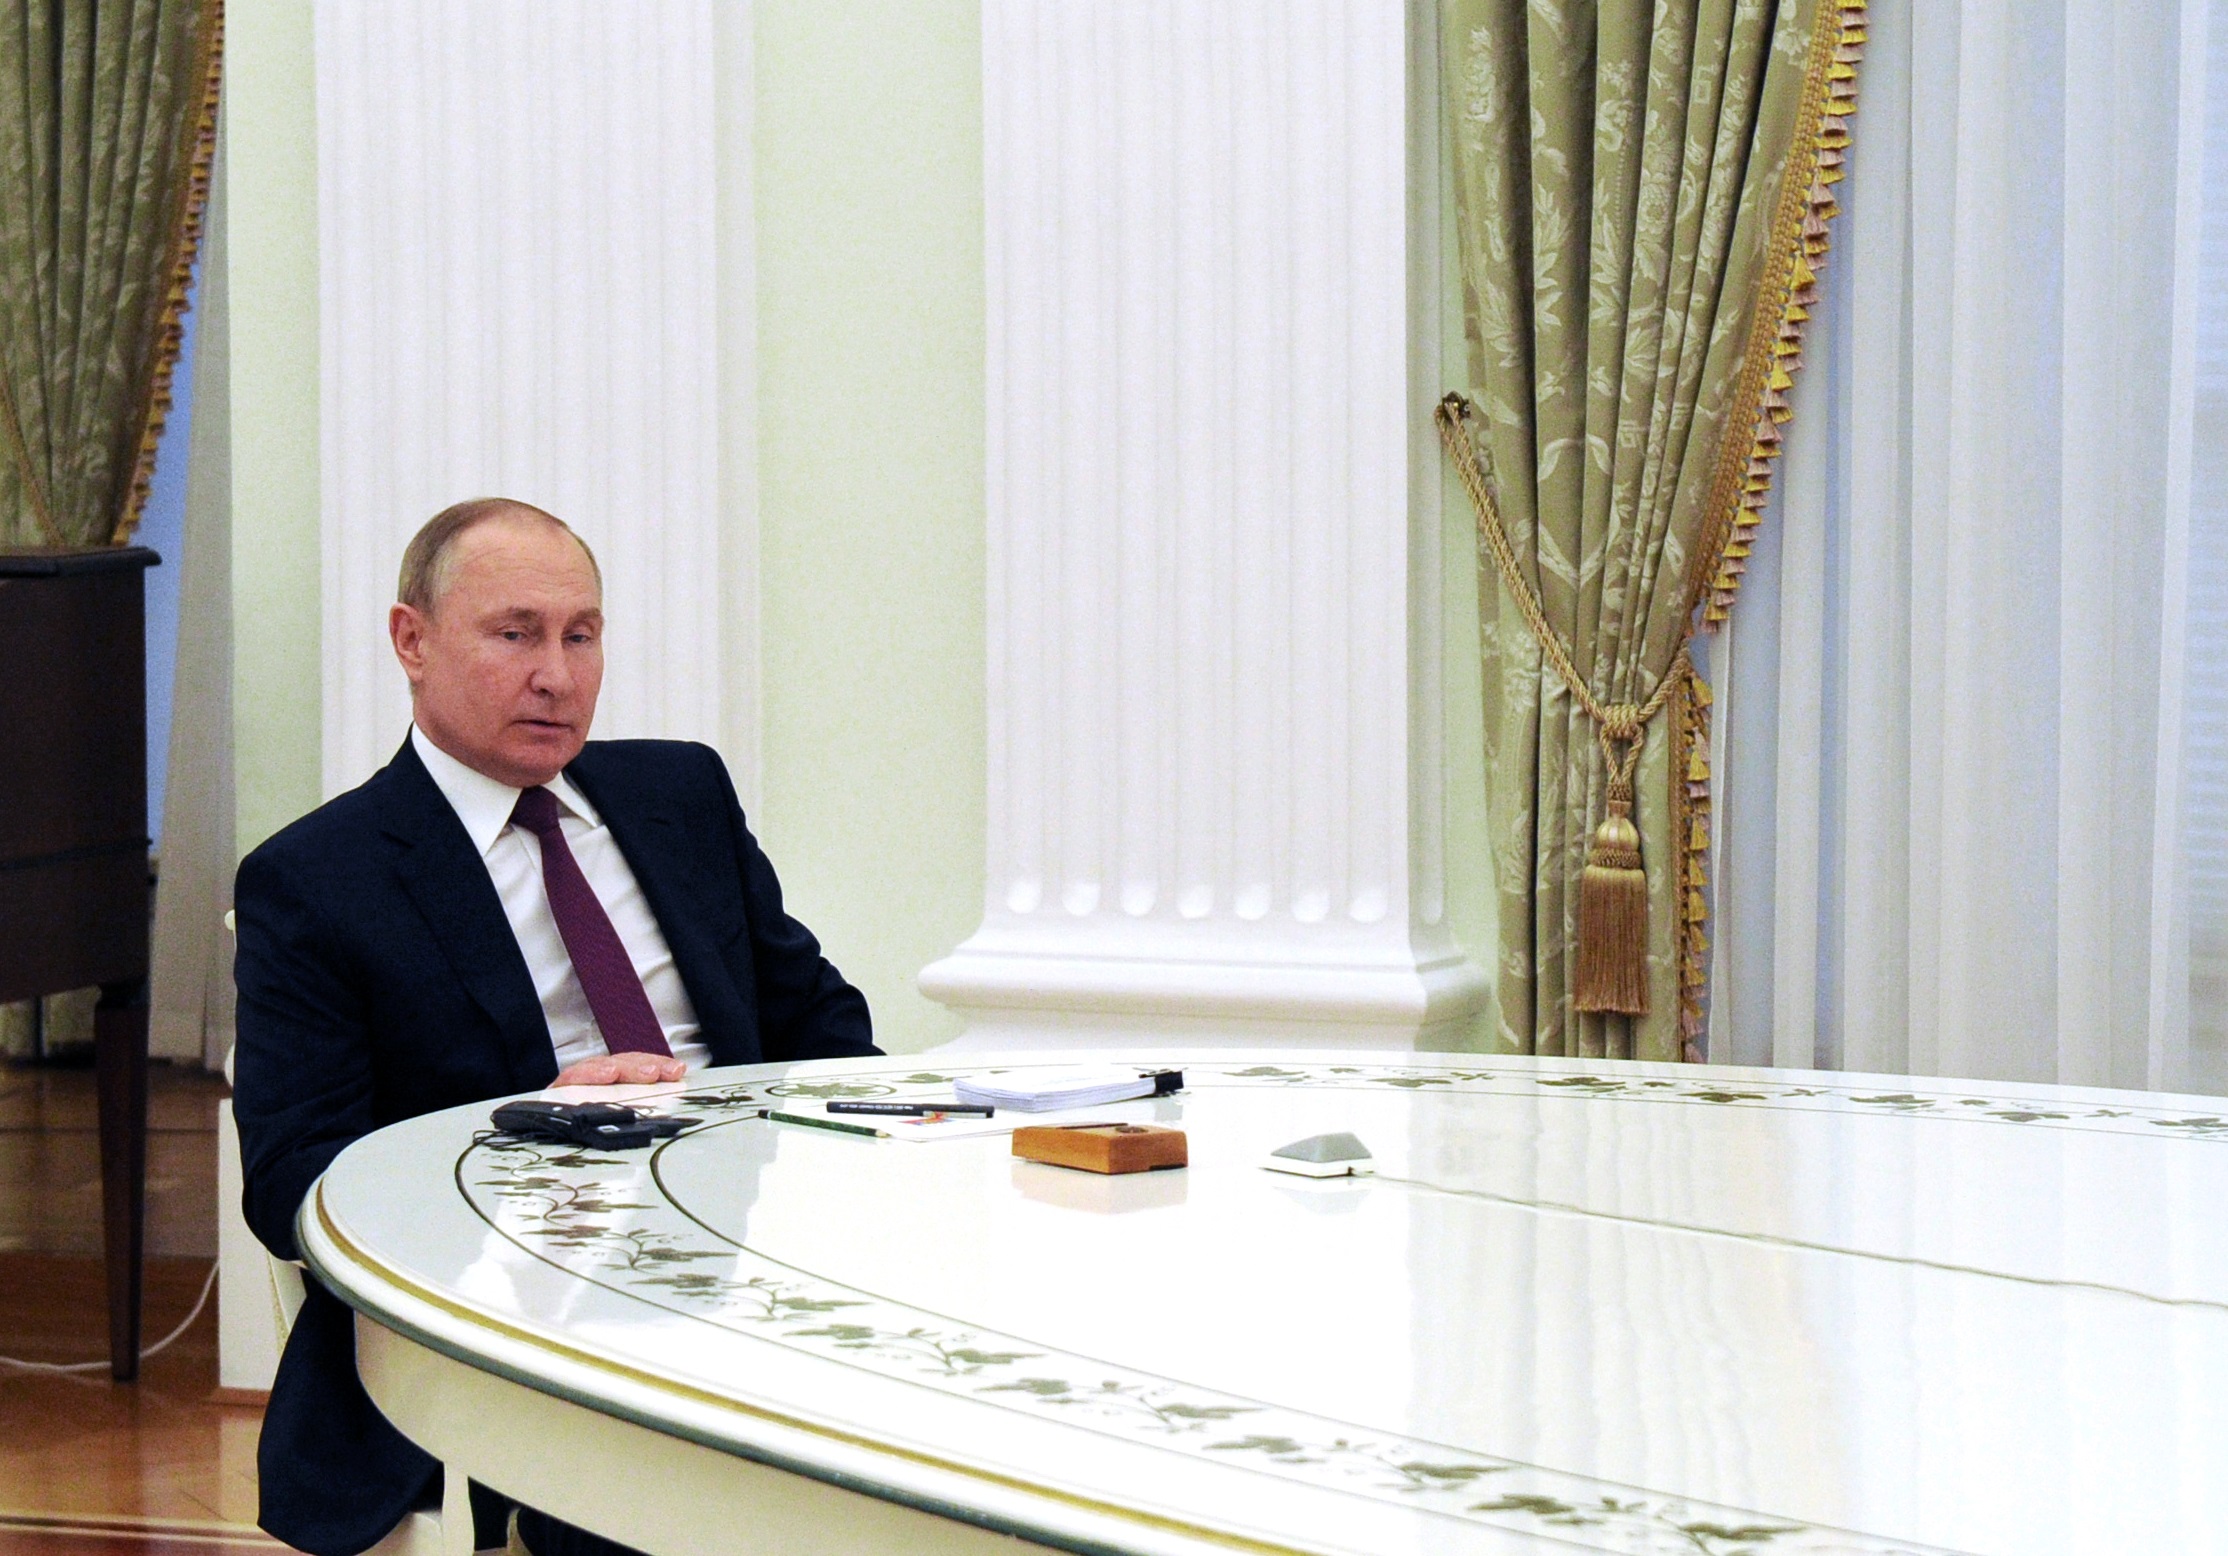 Кремль ру интервью с путиным